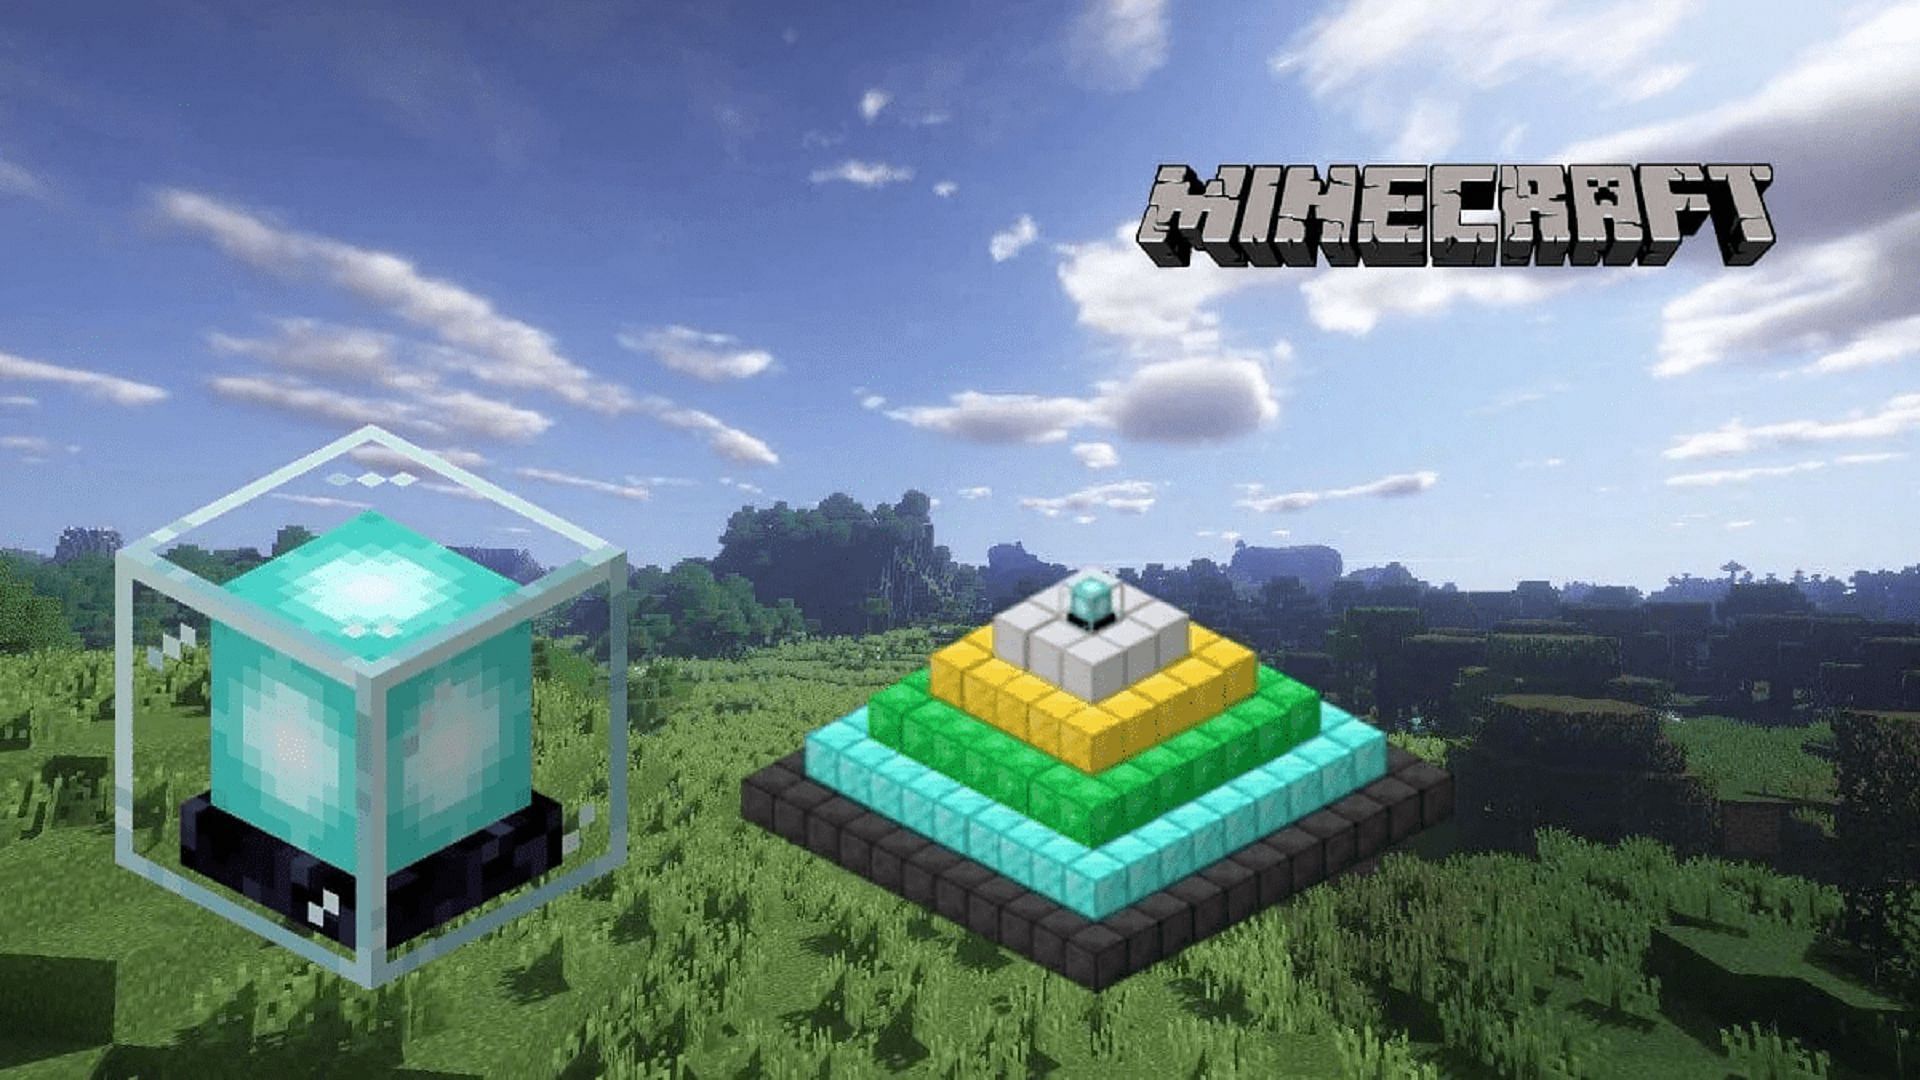 A beacon block and pyramid in Minecraft (Image via Mojang)